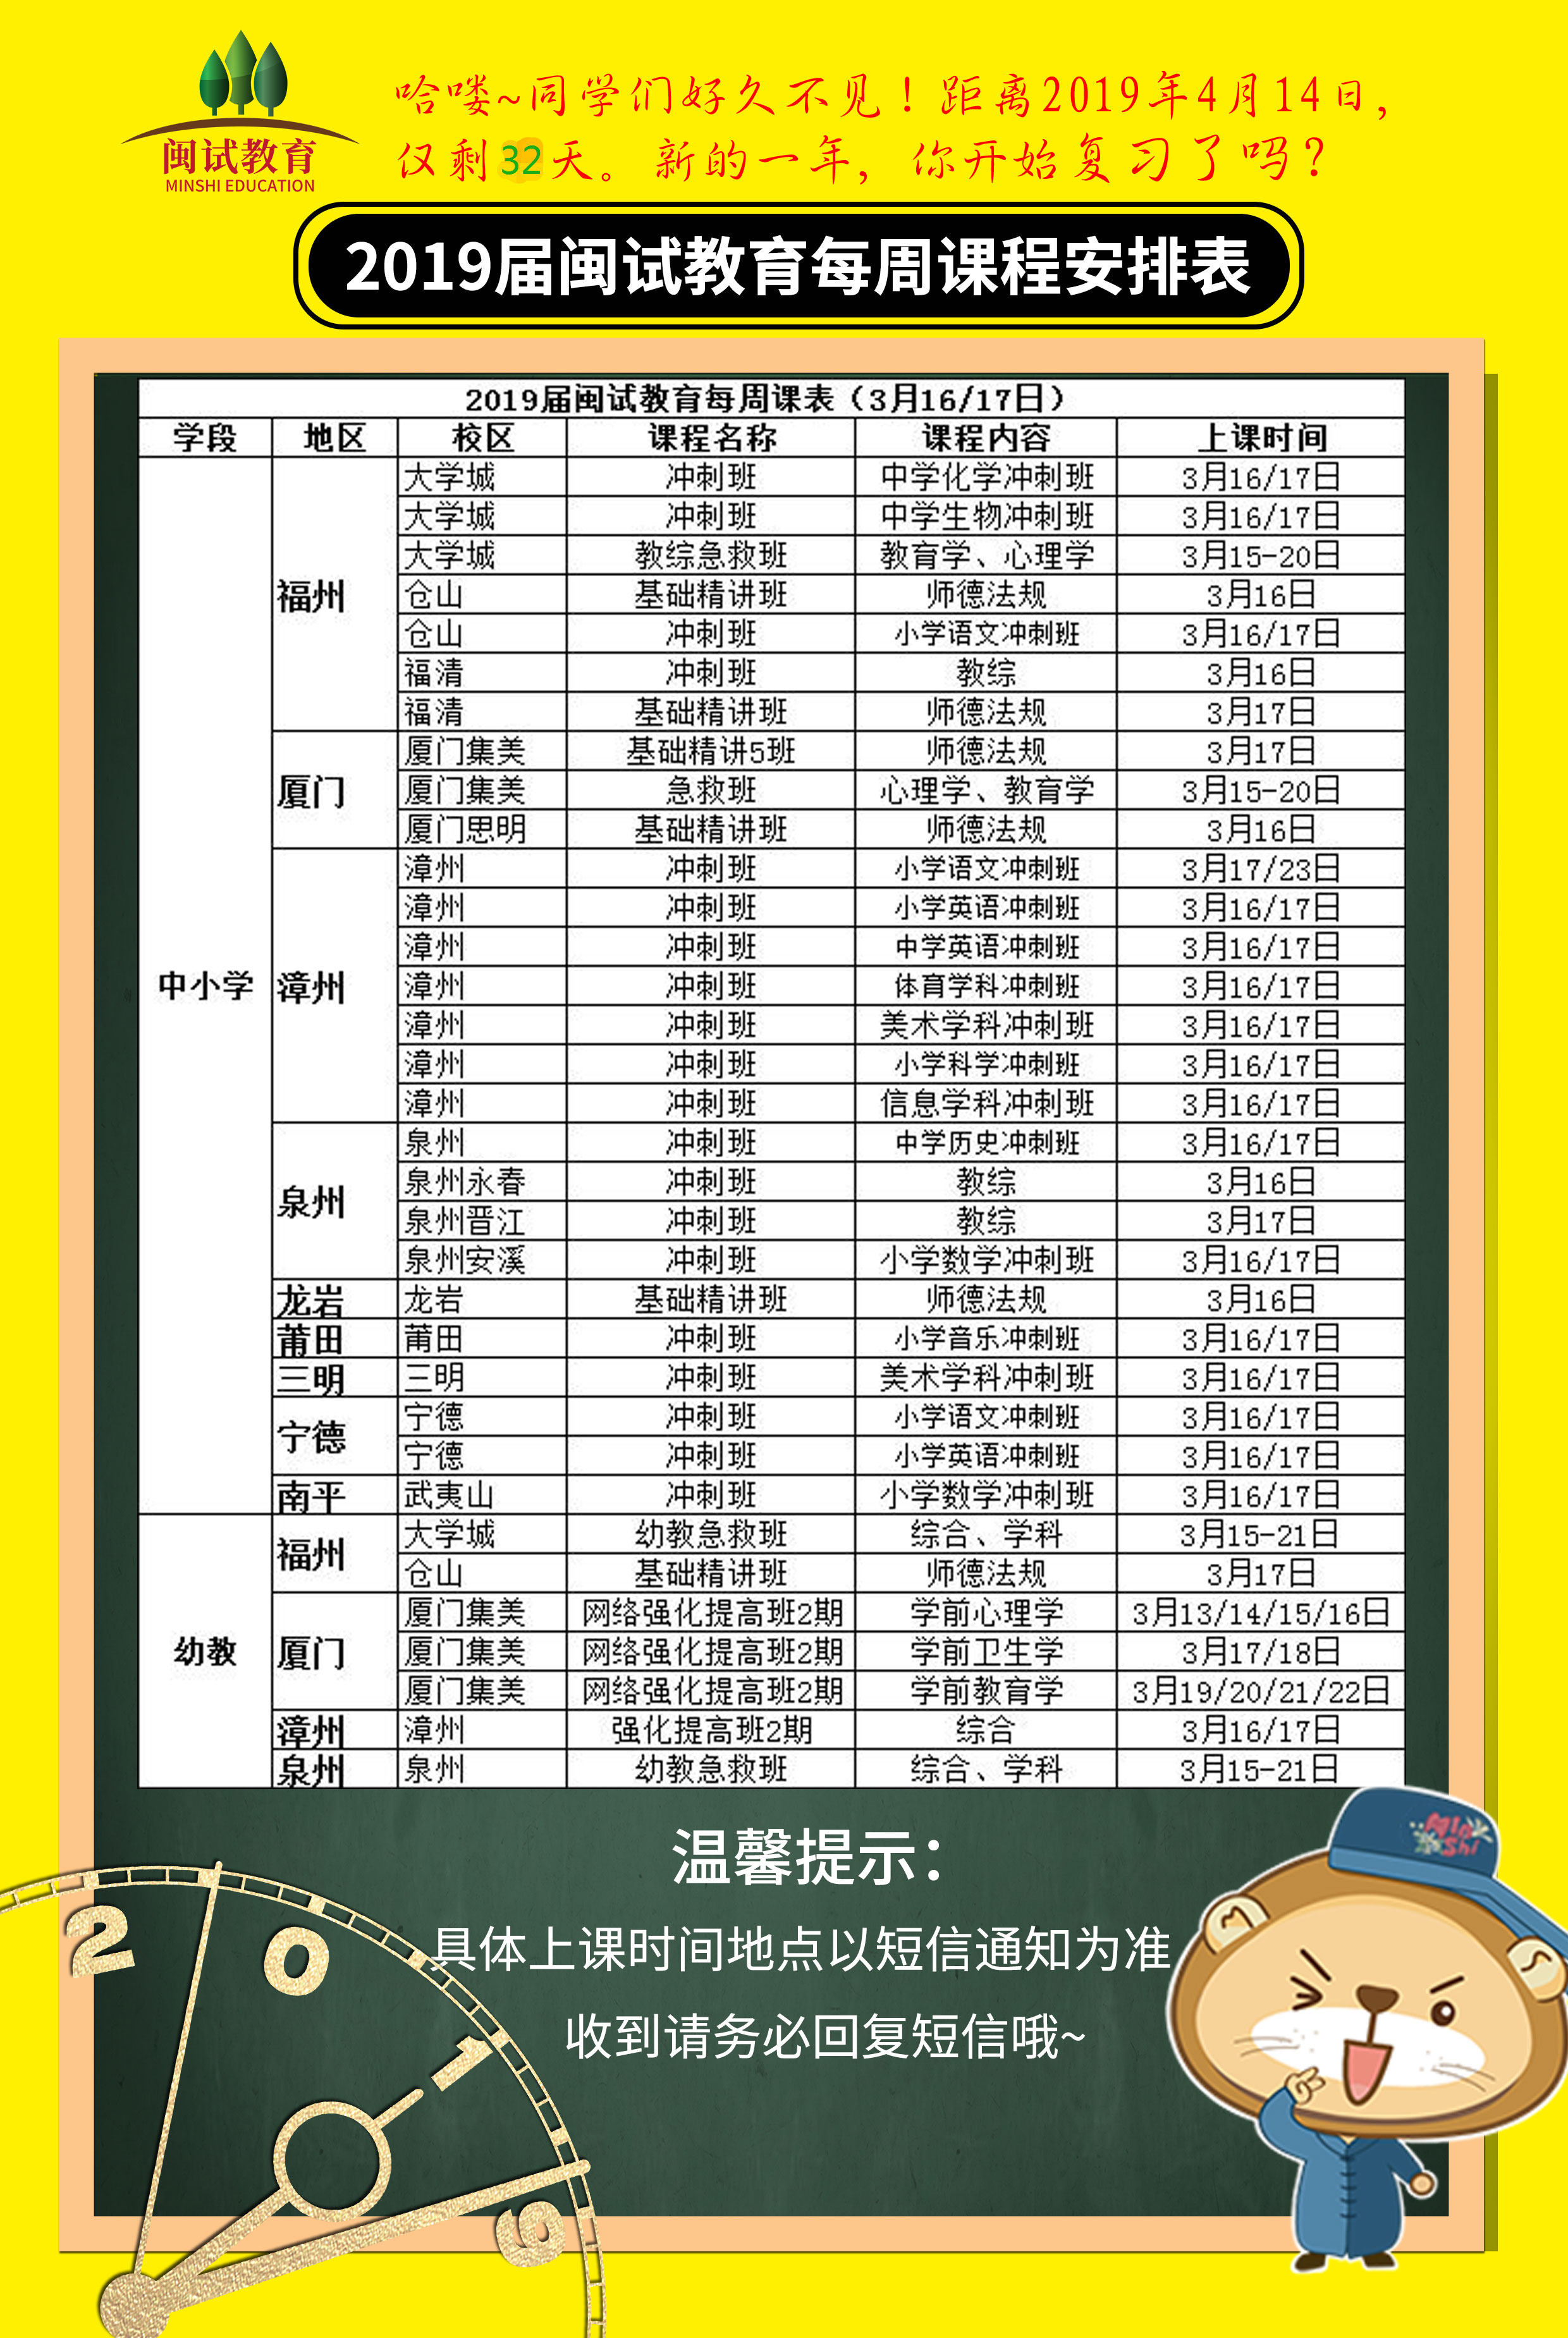 【开课通知】2019届闽试教育3月第三周课程安排表